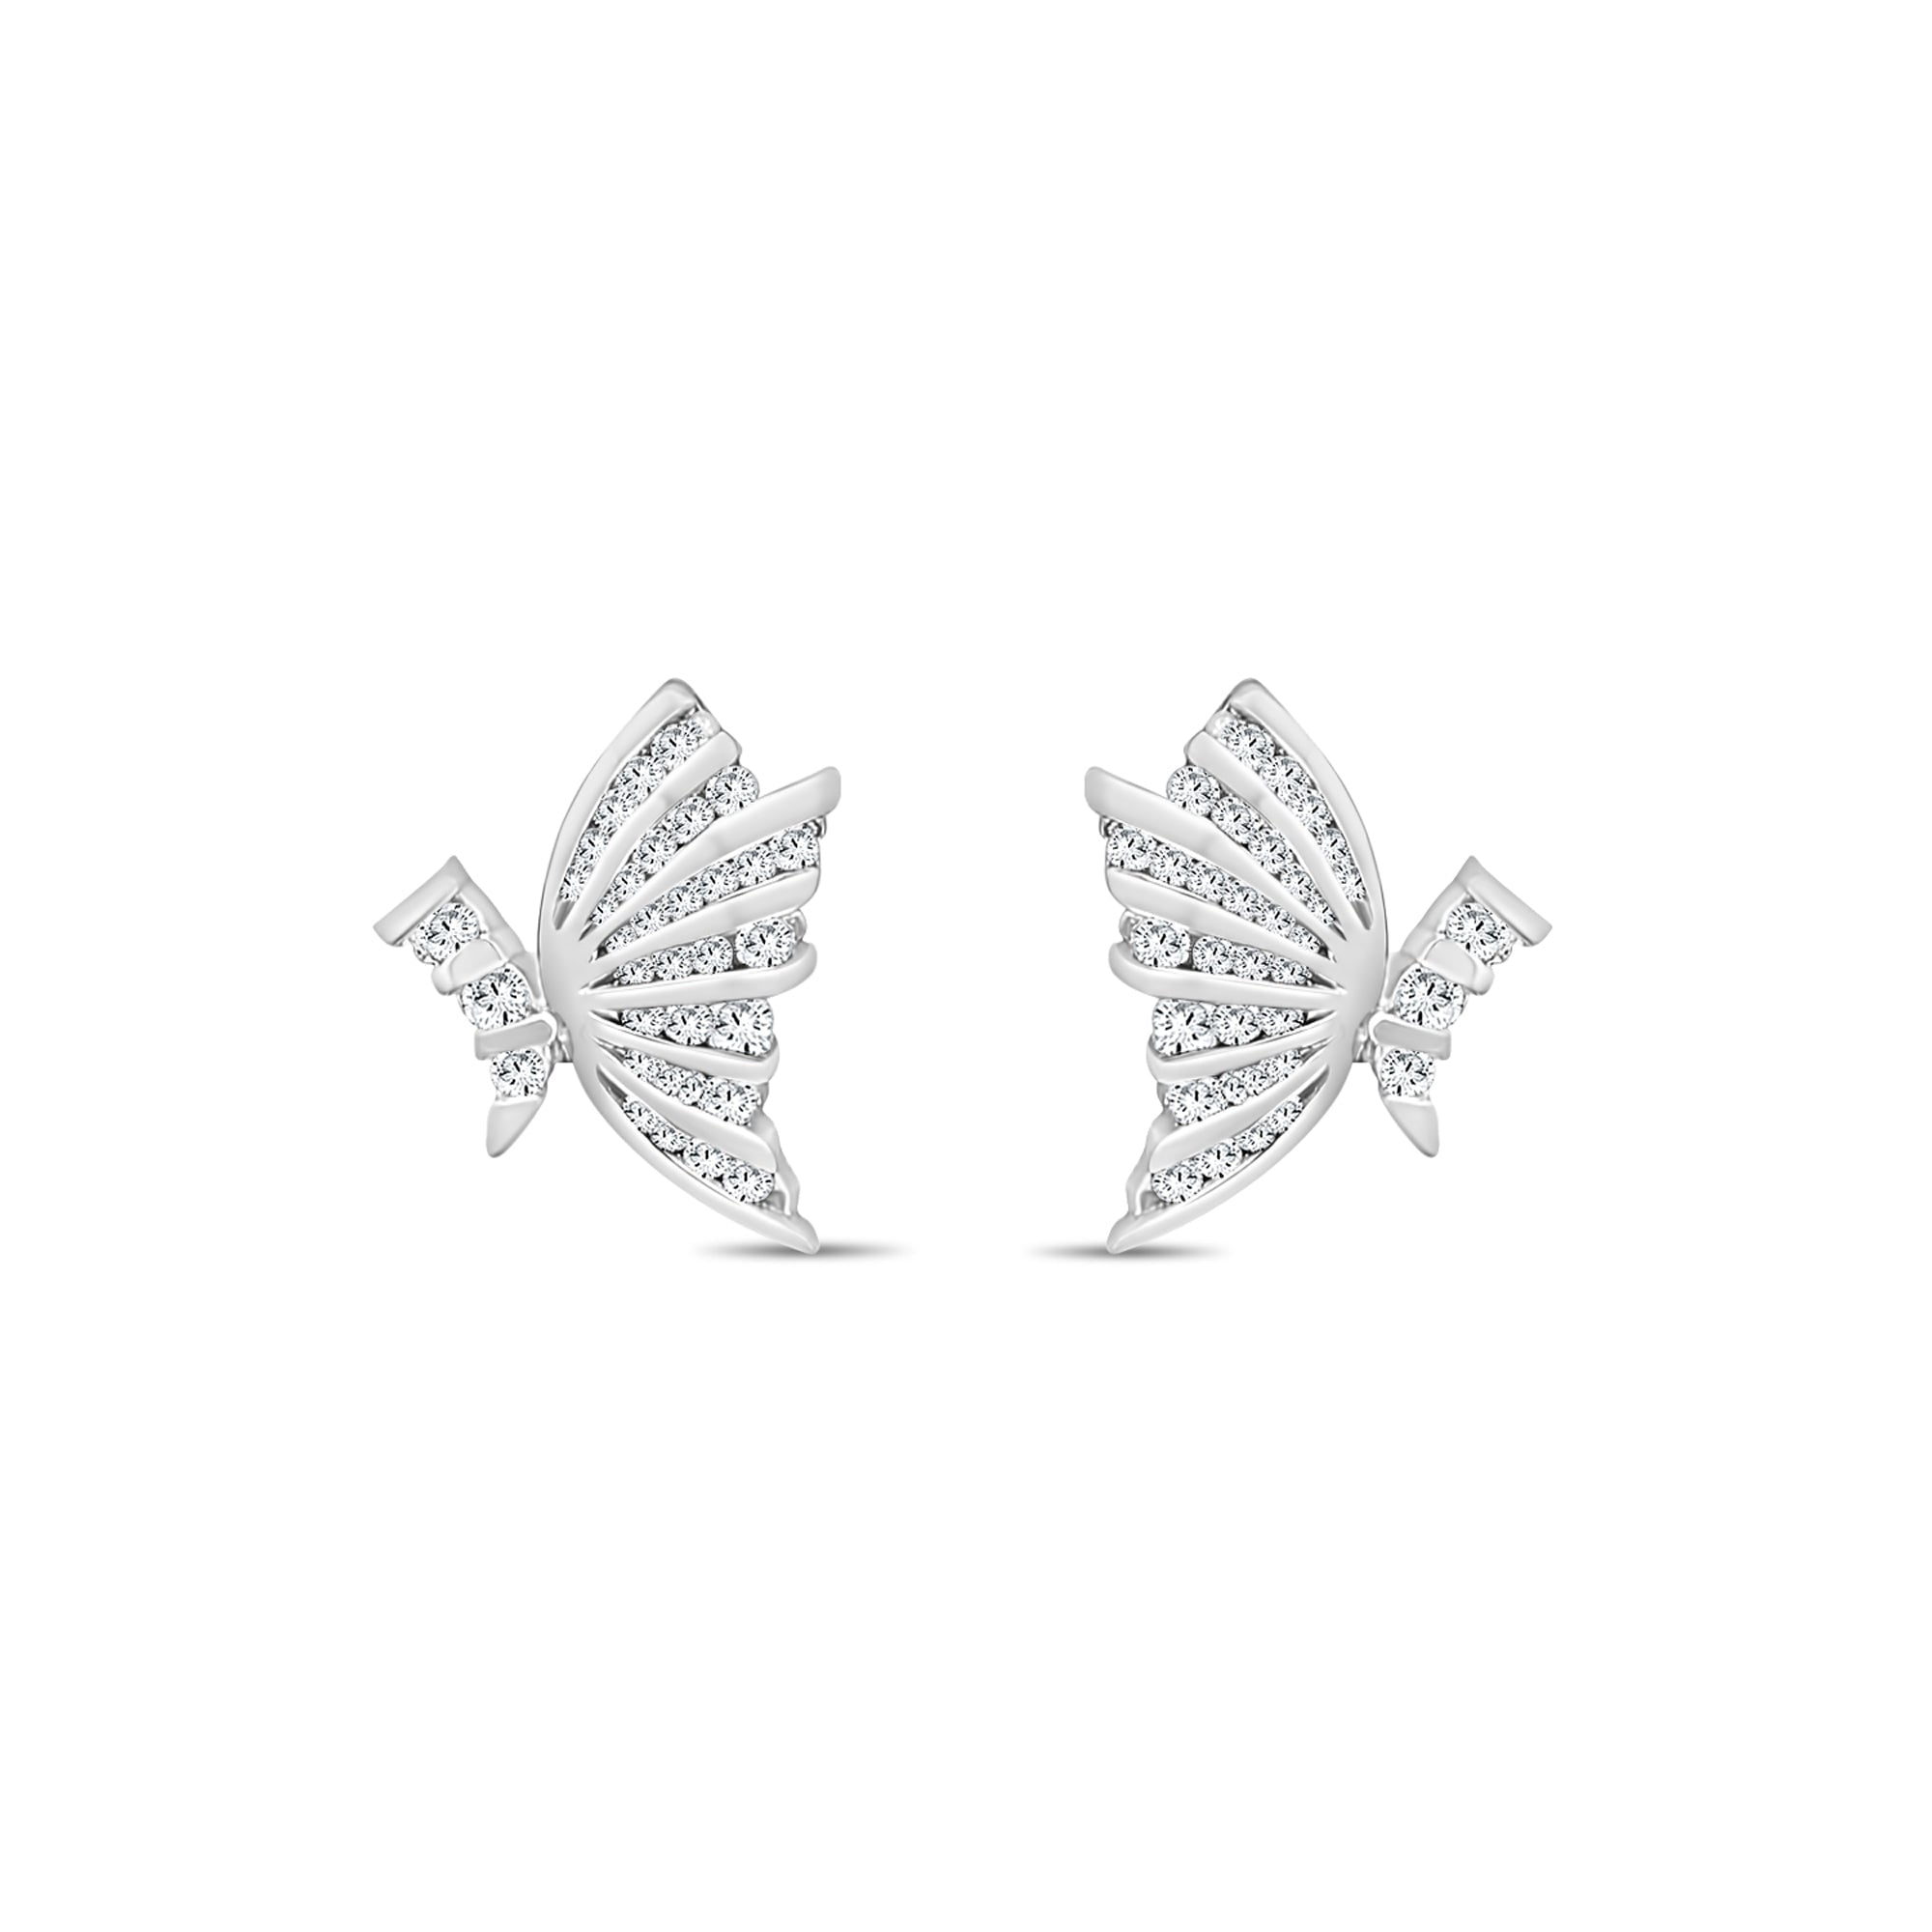 Butterfly Anti Versatile 925 Sterling Silver Earring Backs Earnuts Posts  $0.36 For Sale [categories]